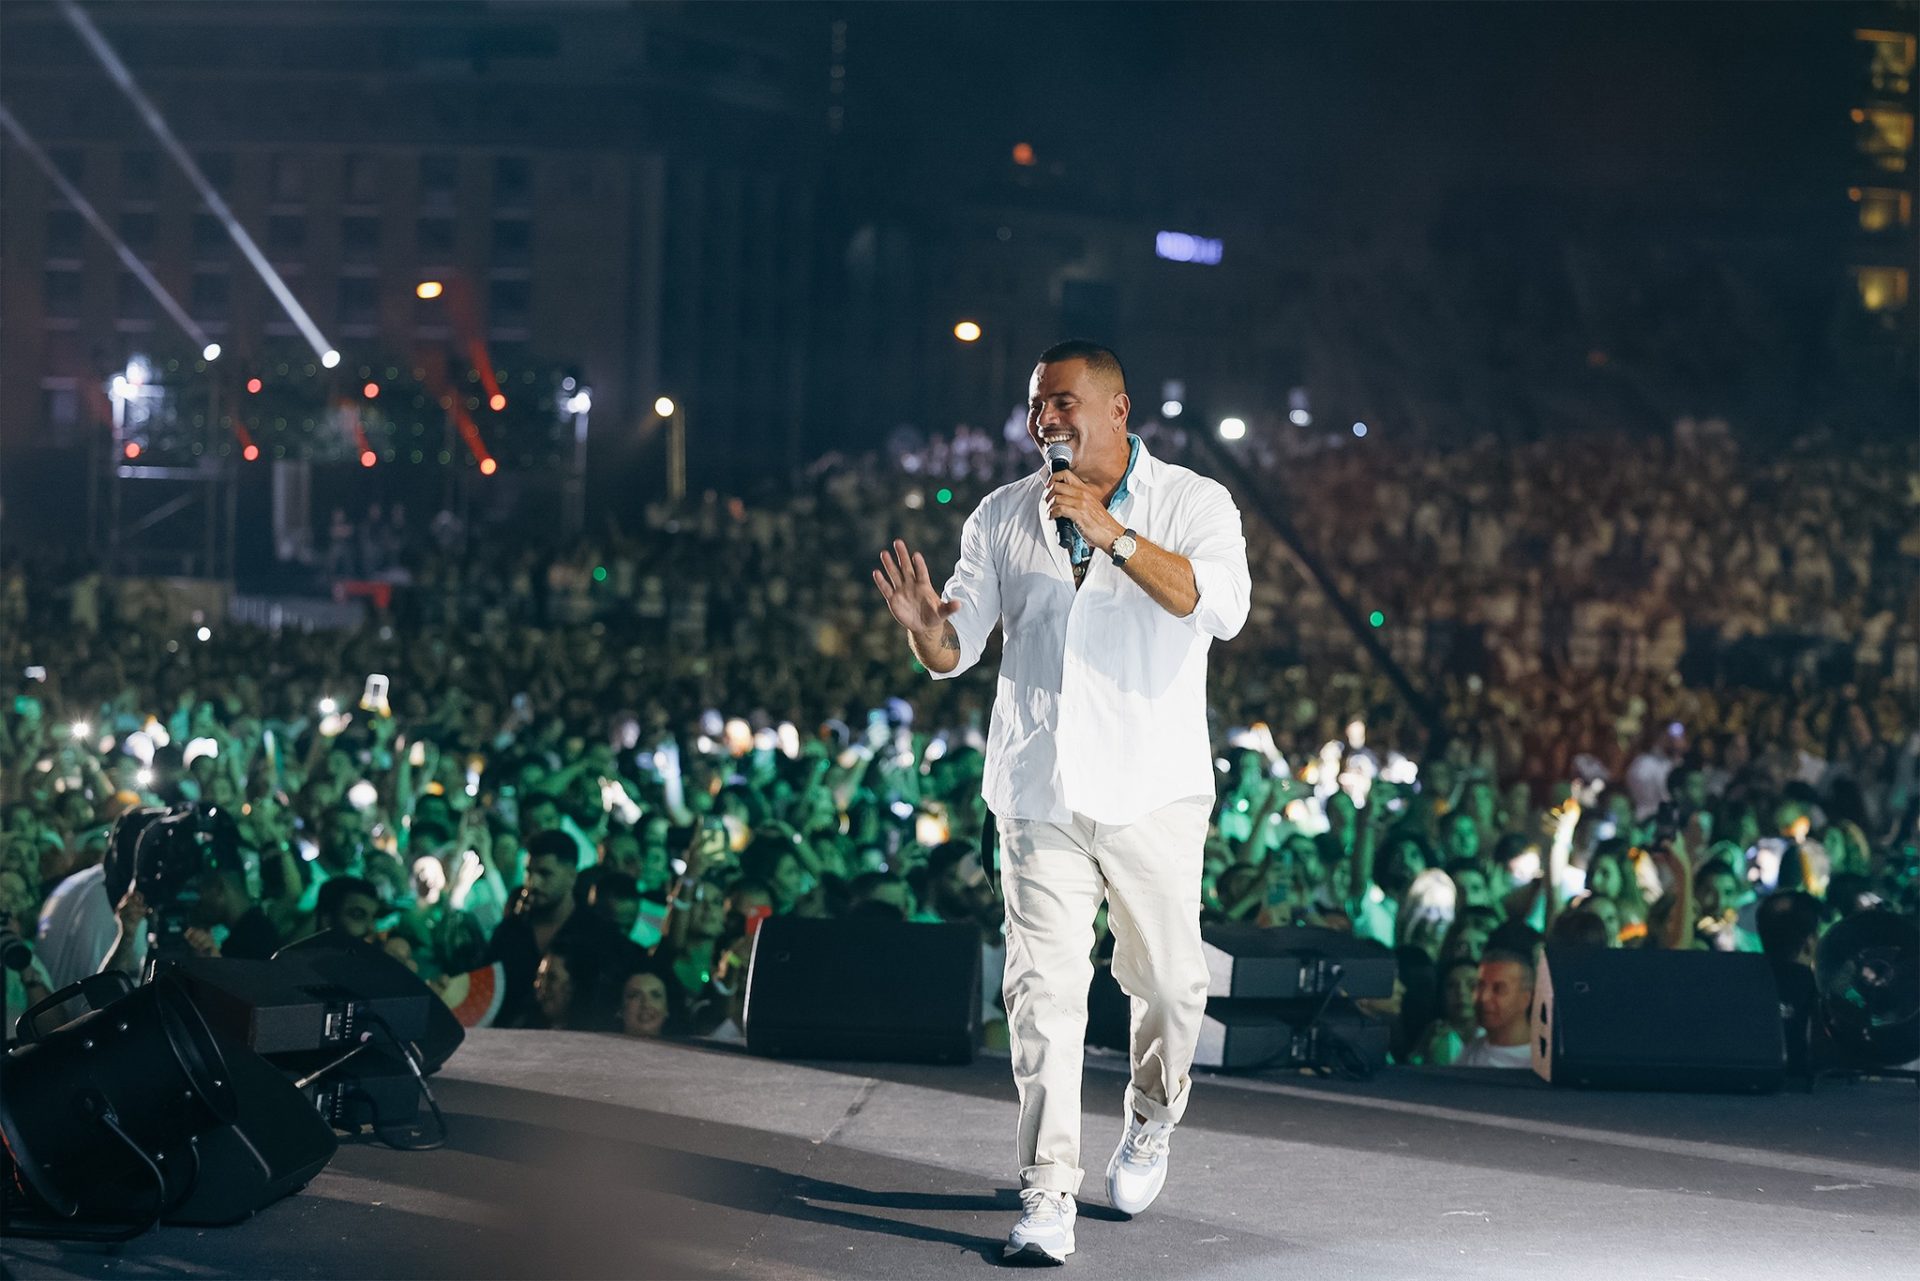 بلغ سعر ساعة عمرو دياب في حفل لبنان 510,000 دولار